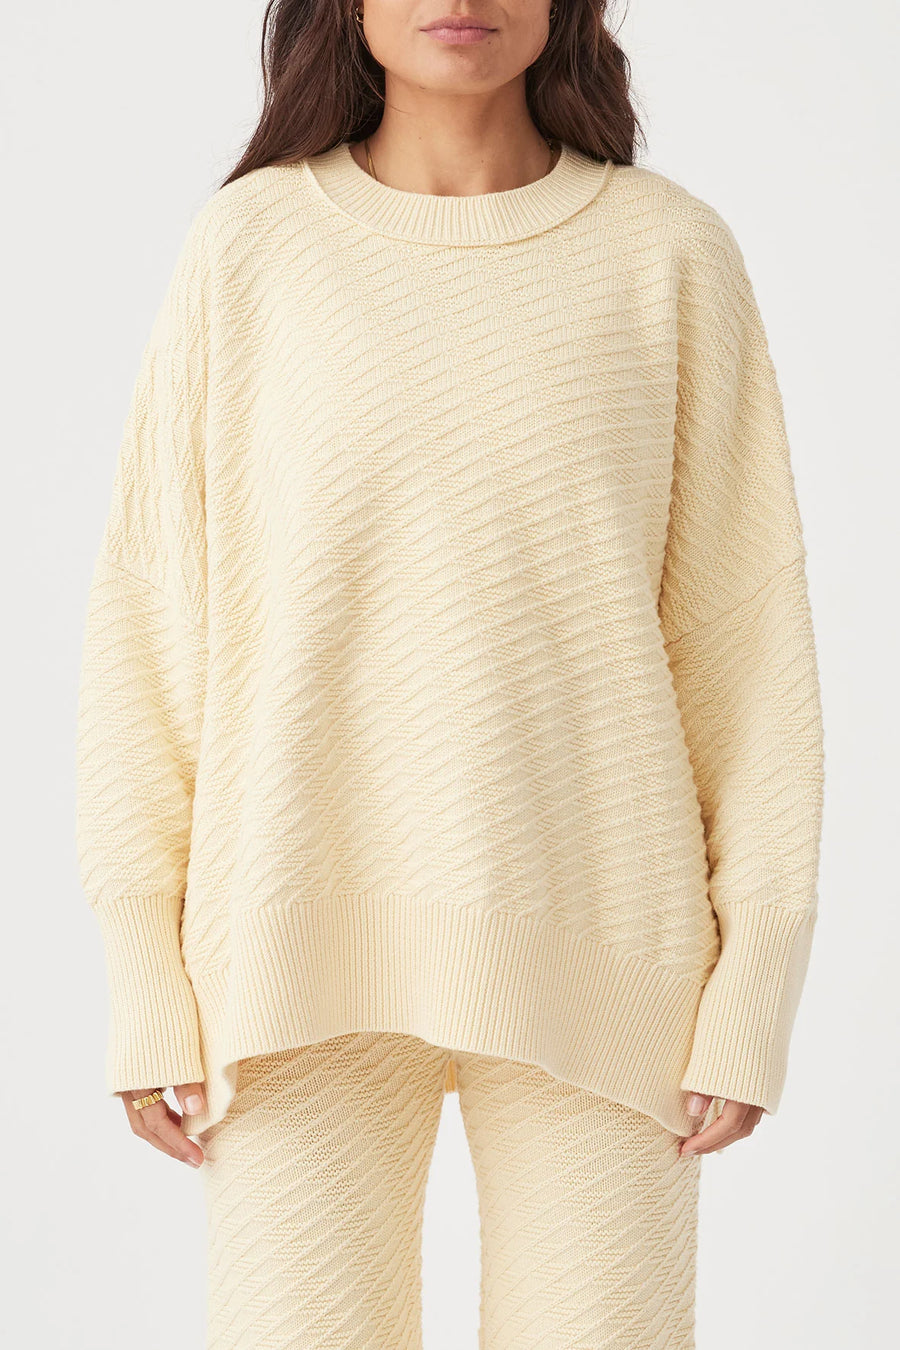 Vivi Sweater Butter